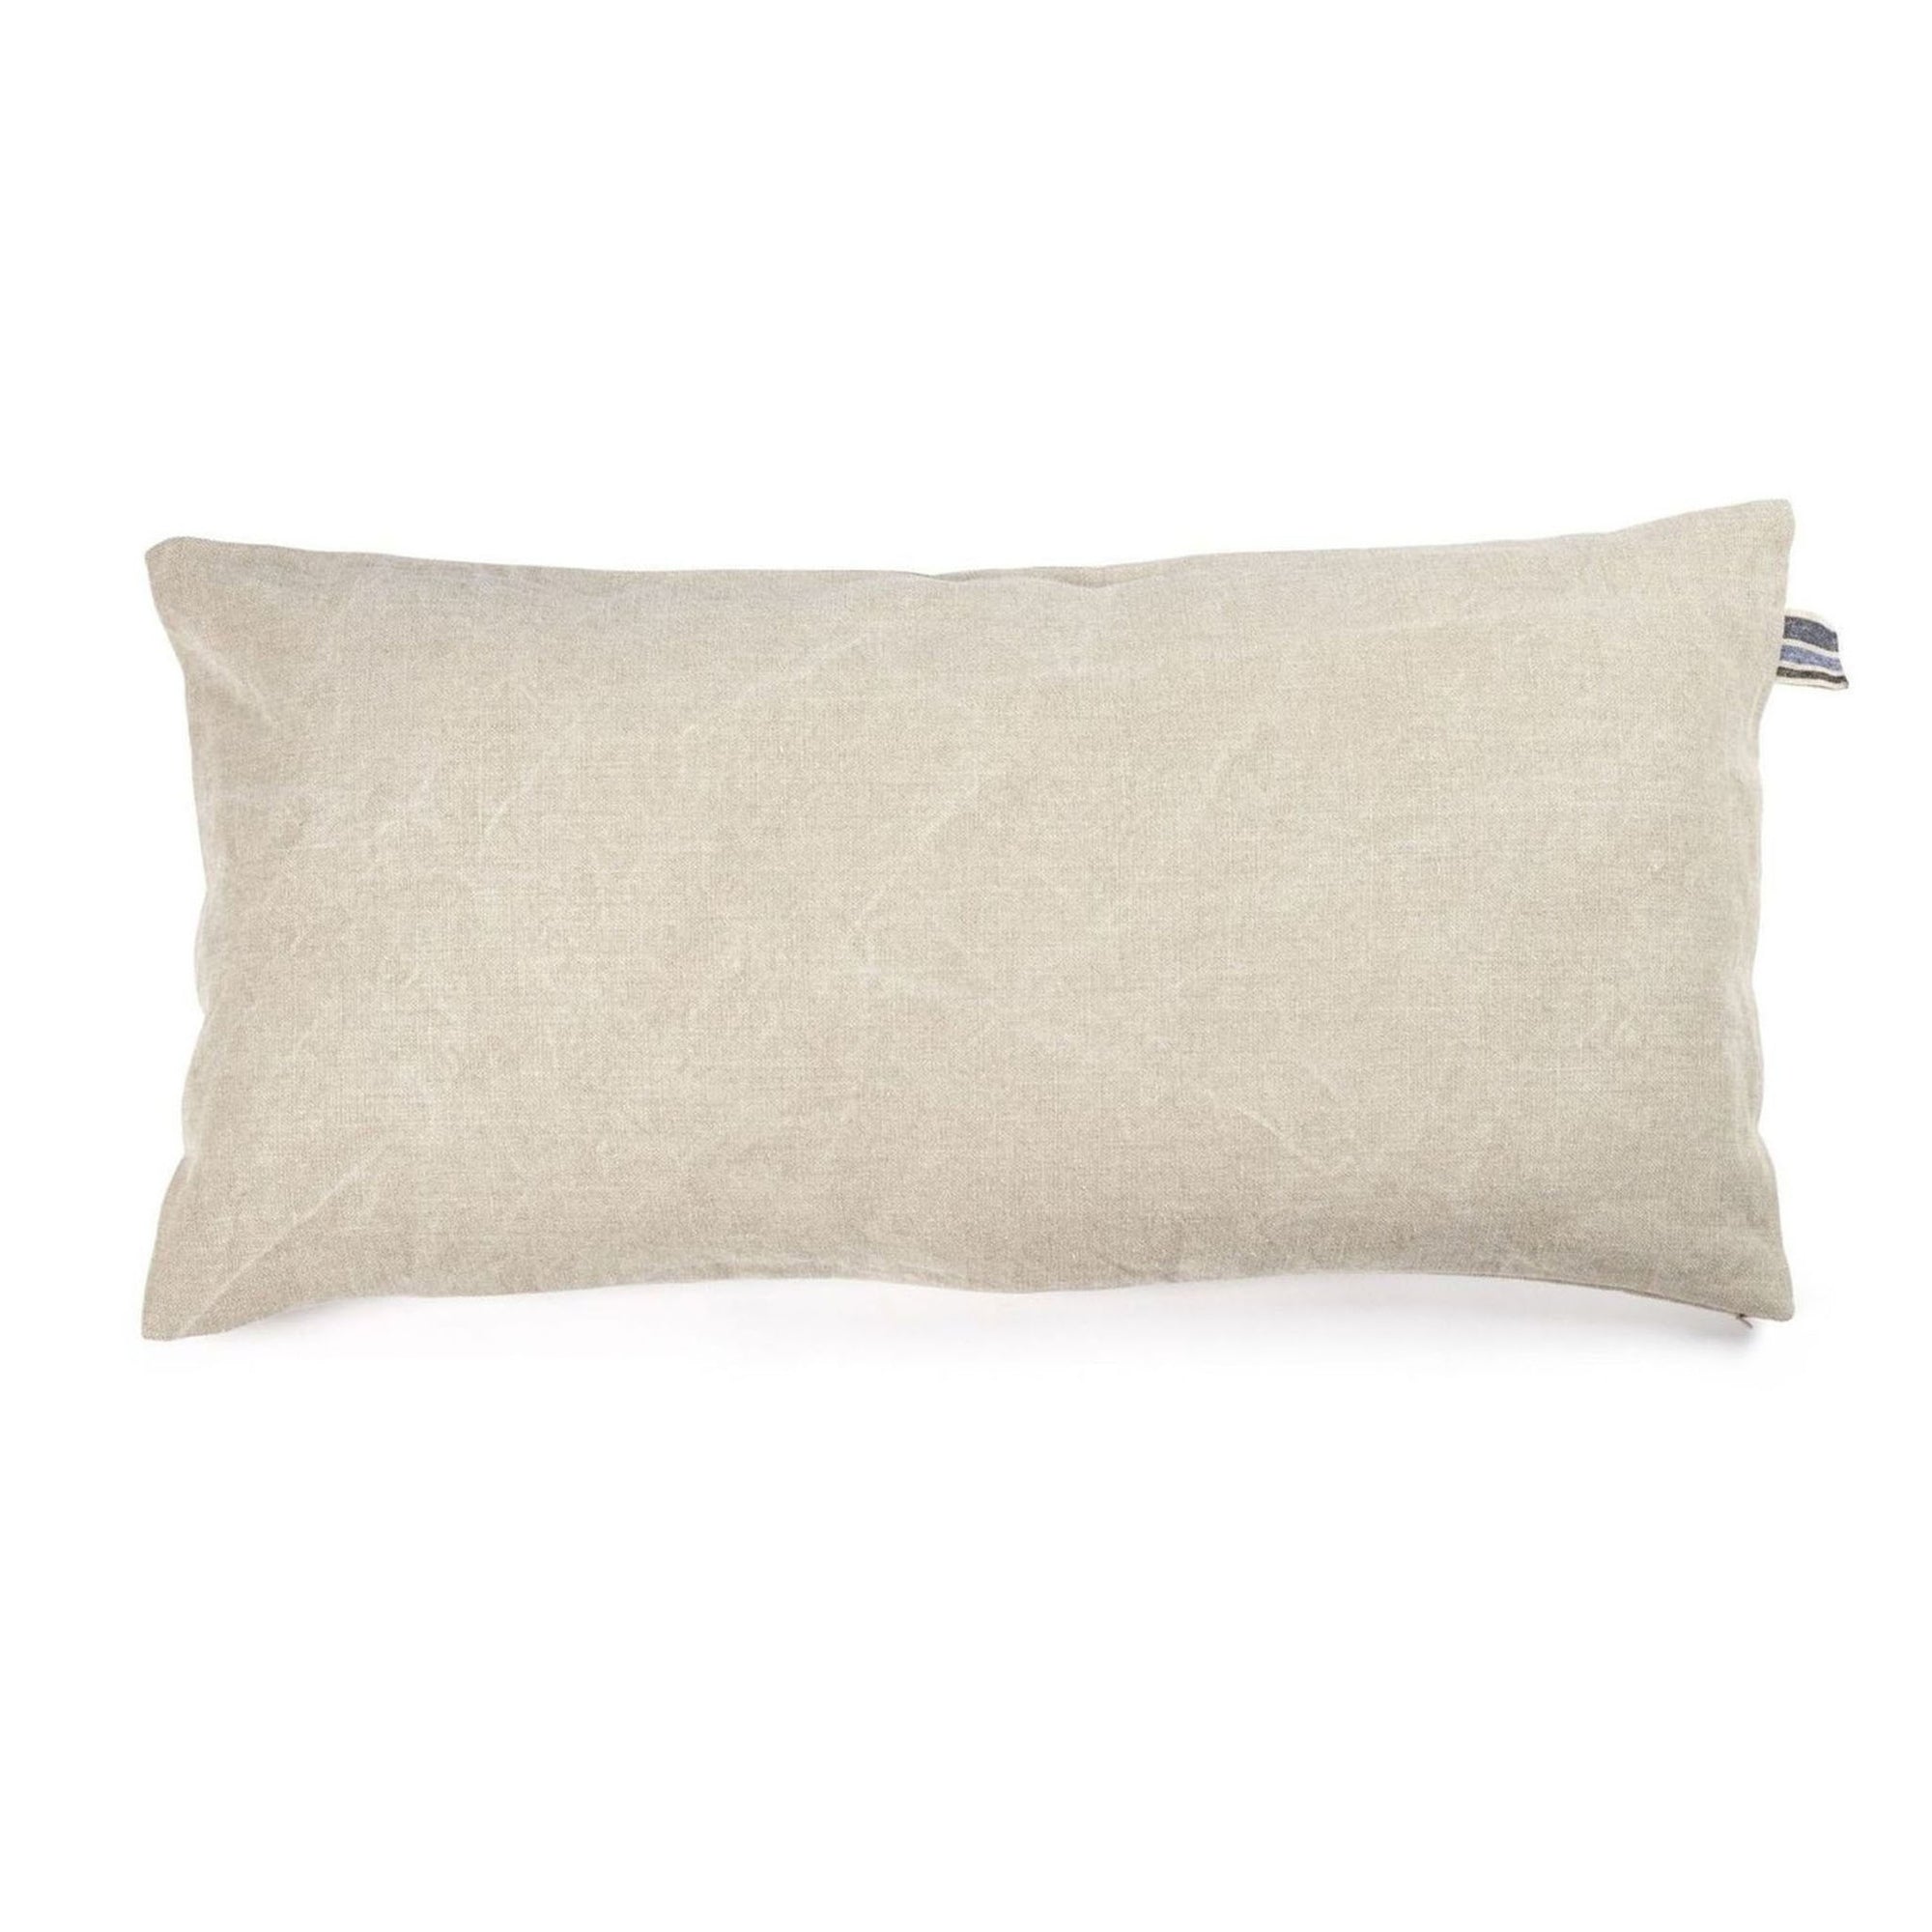 Galloper Flax Pillow